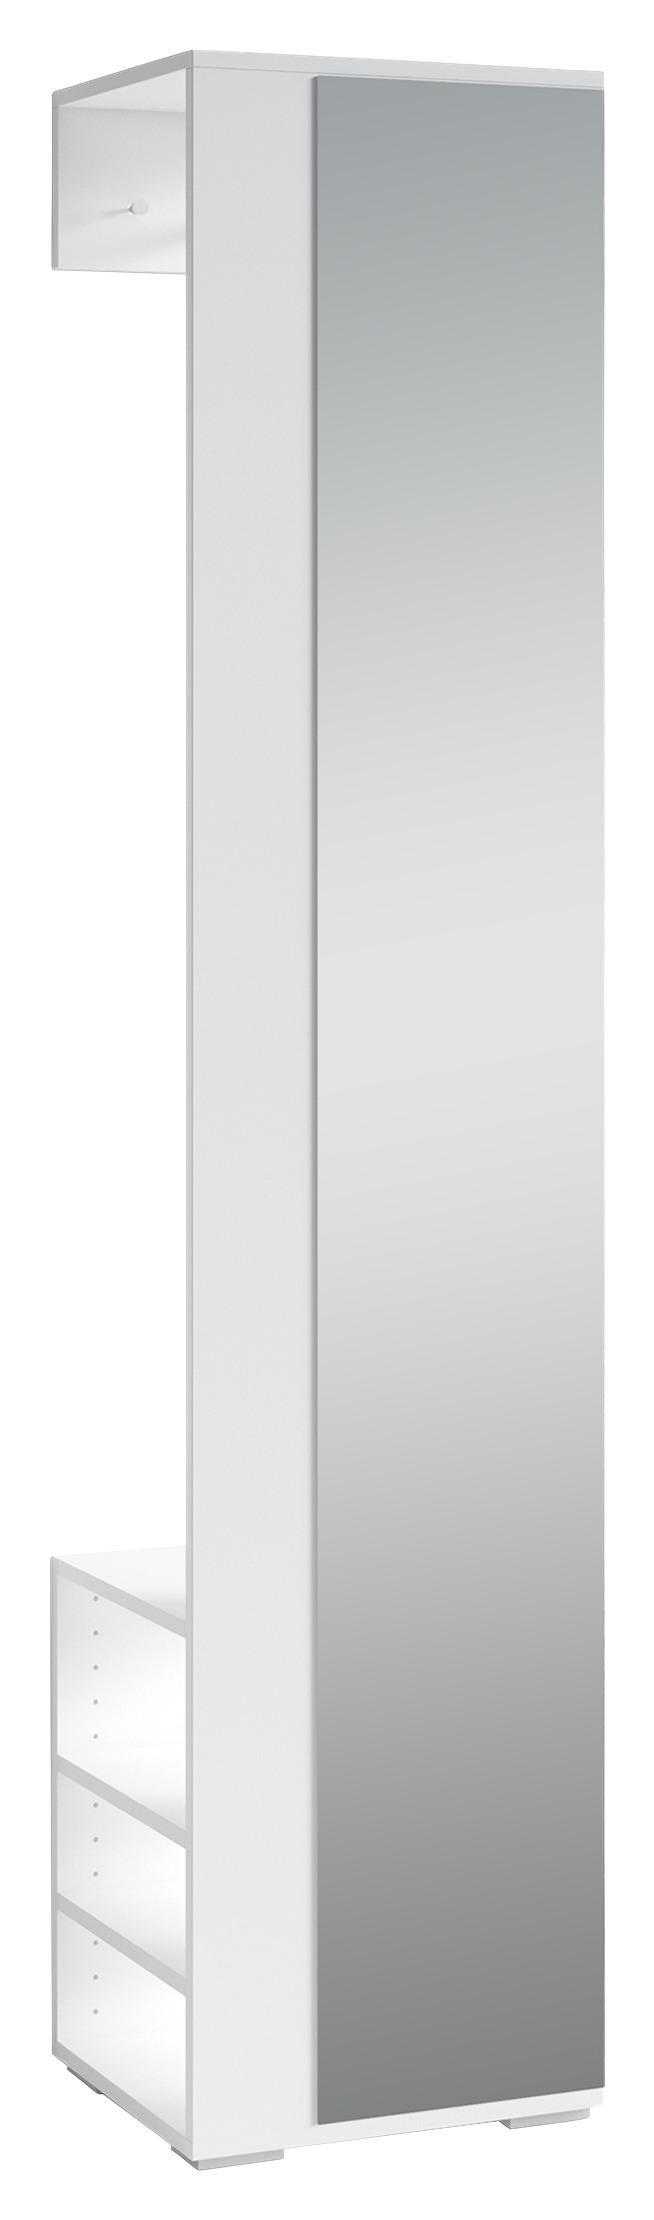 GARDEROBENSCHRANK Weiß  - Silberfarben/Weiß, MODERN, Glas/Holzwerkstoff (40/185/35cm) - MID.YOU